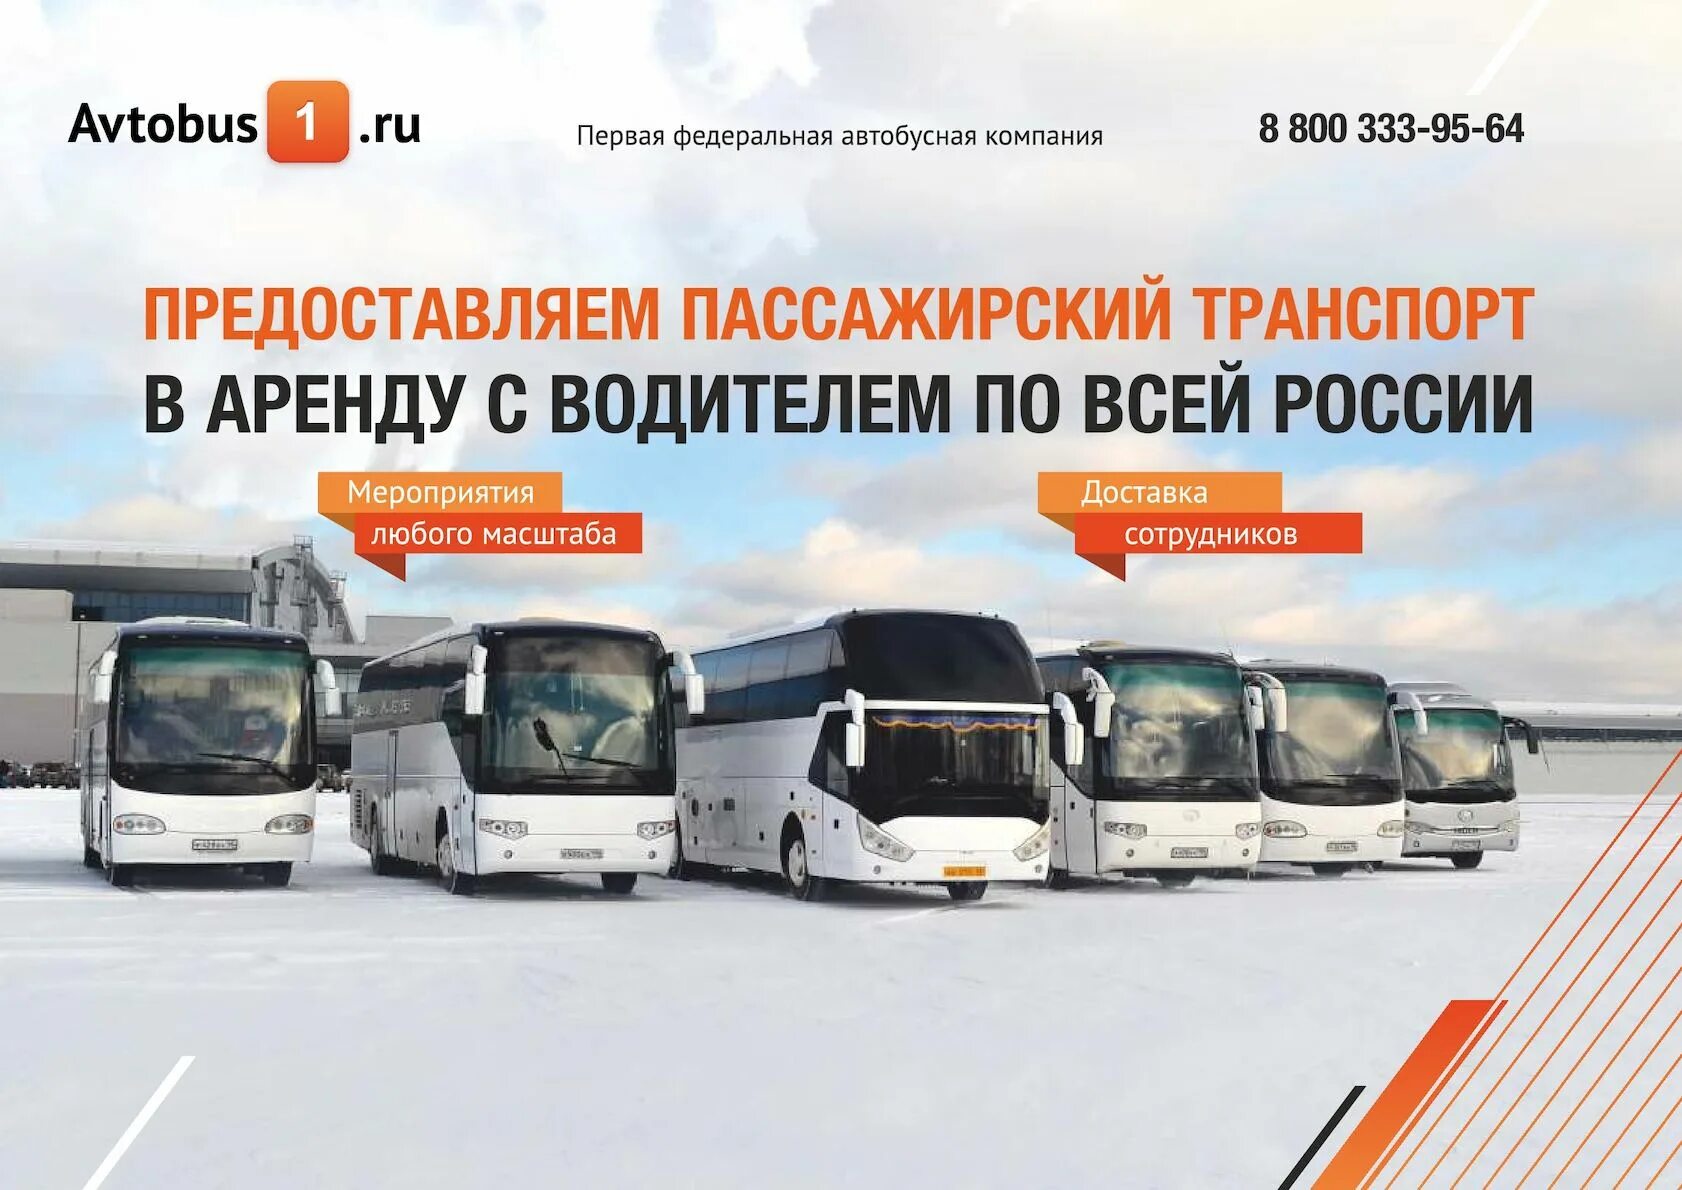 Фирма автобус 1. Автобусная компания. Автобусная транспортная компания. Транспортная компания автобусы. Первая транспортная компания автобусы.